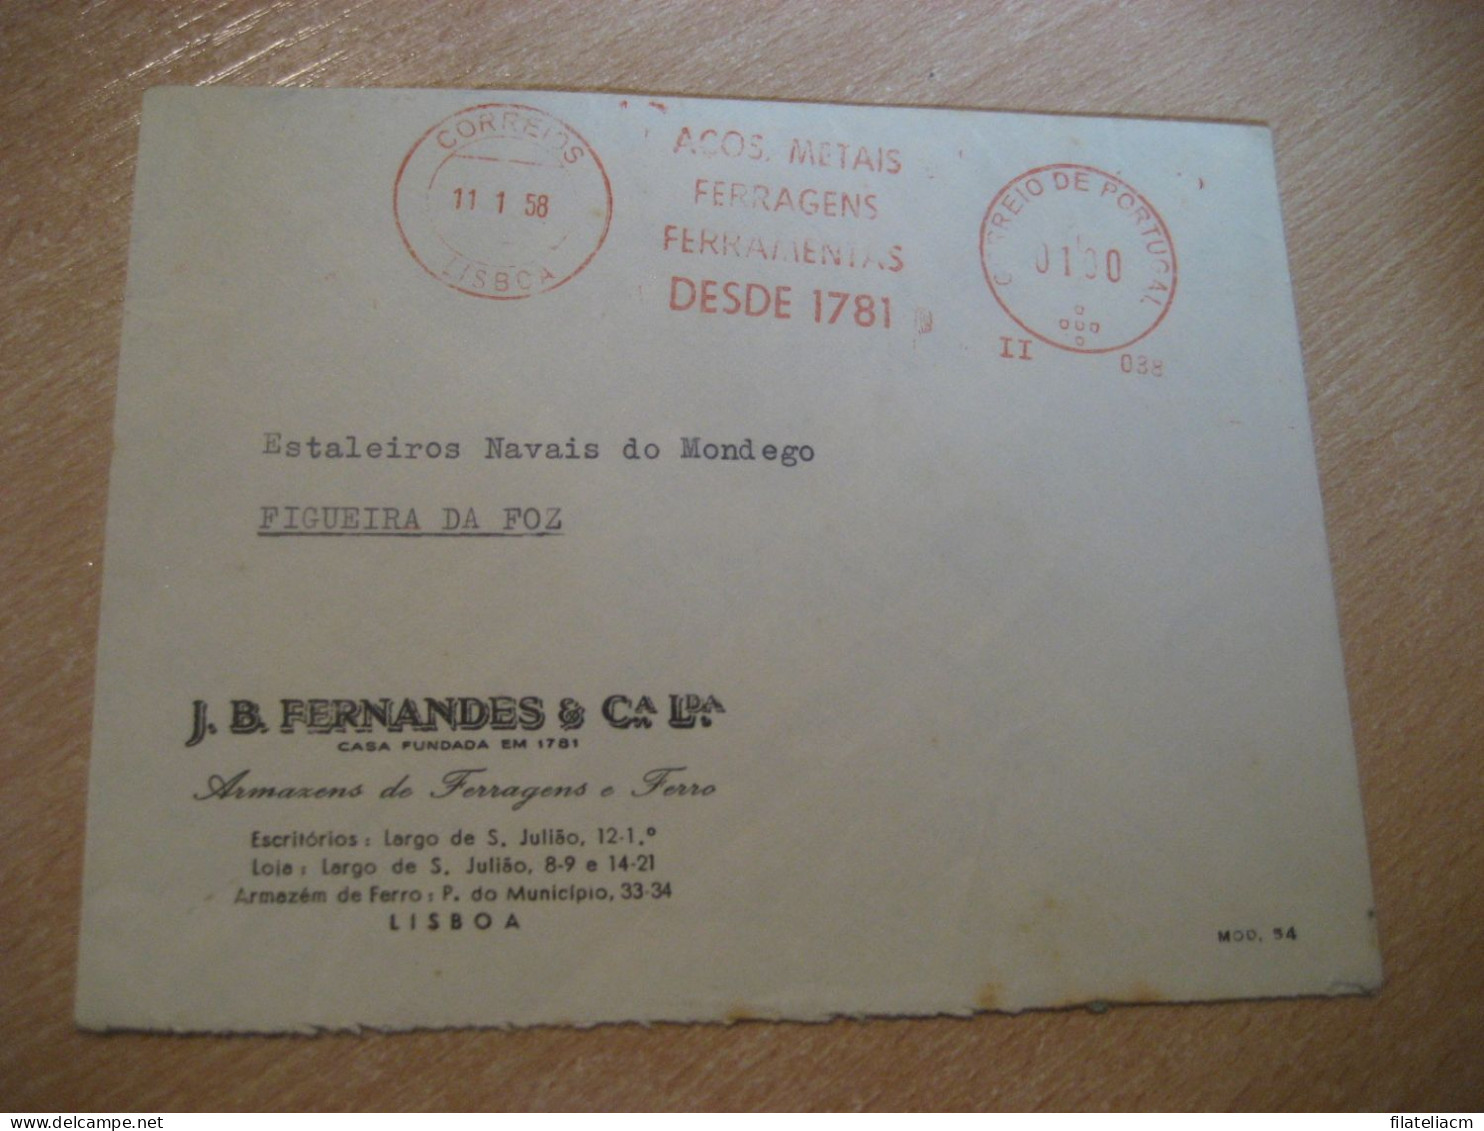 LISBOA 1958 To Figueira Da Foz Acos Metais Ferragens Ferramentas Meter Mail Cancel Cover PORTUGAL - Briefe U. Dokumente